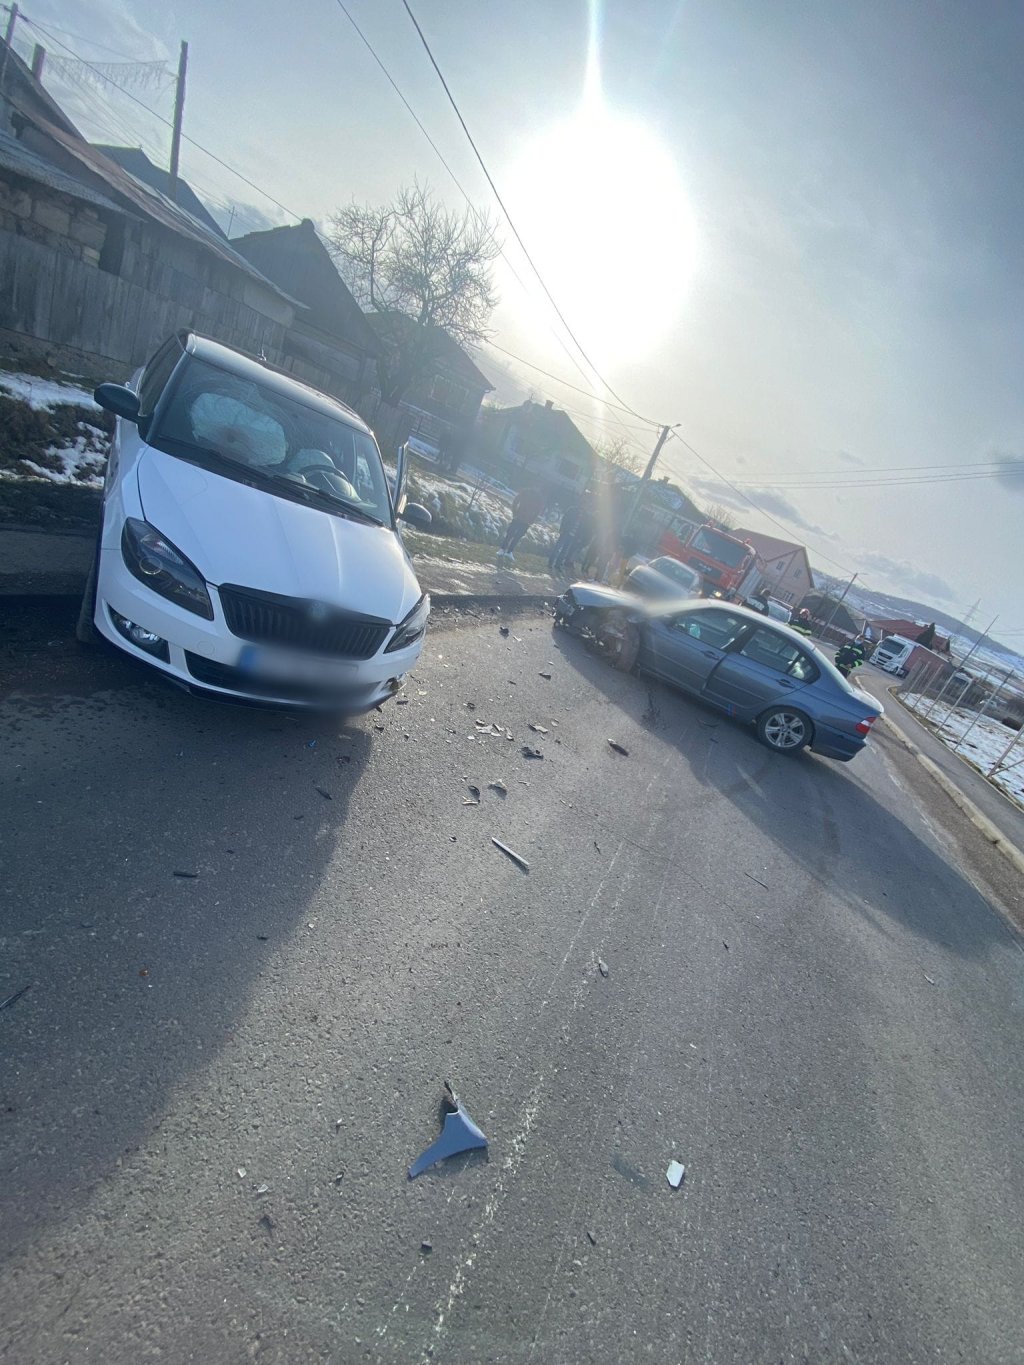 Impact frontal între două mașini la Cluj. O femeie și un copil, transportați la spital